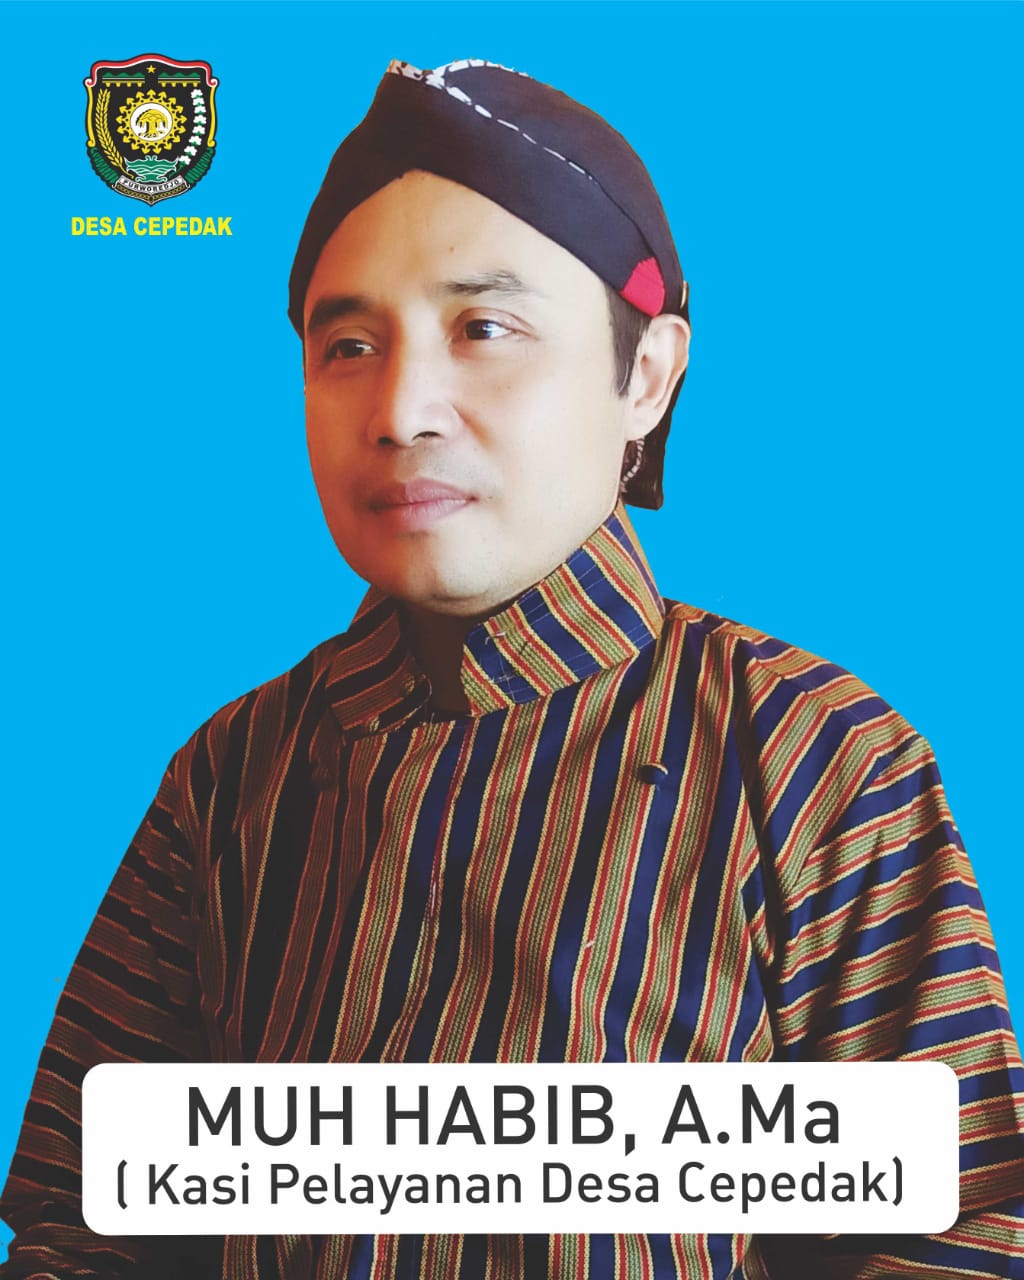 MUH HABIB, A.Md